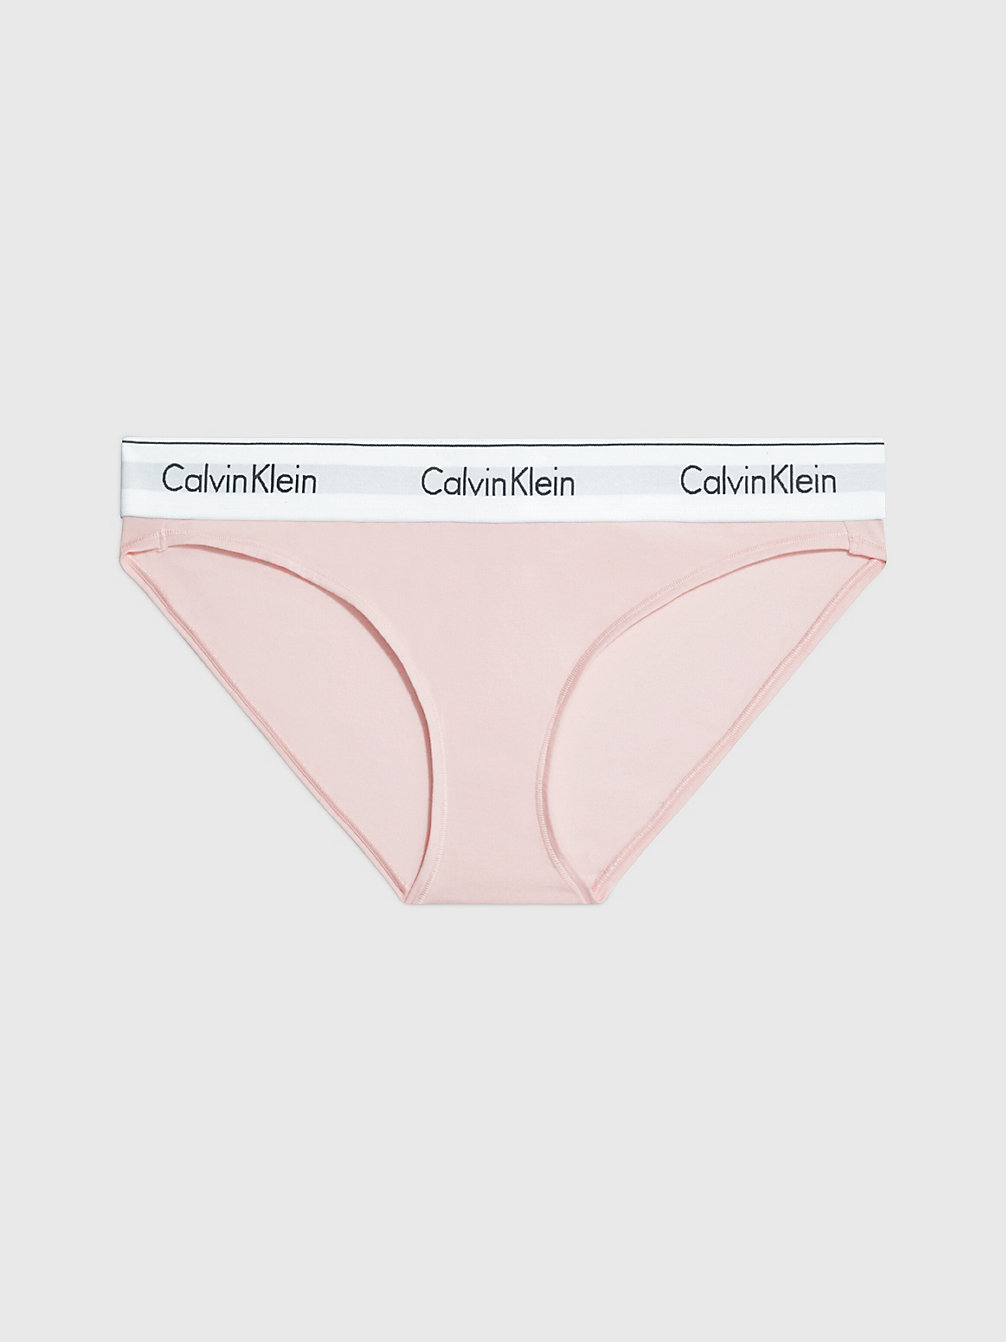 NYMPHS THIGH Bikini Briefs - Modern Cotton undefined women Calvin Klein